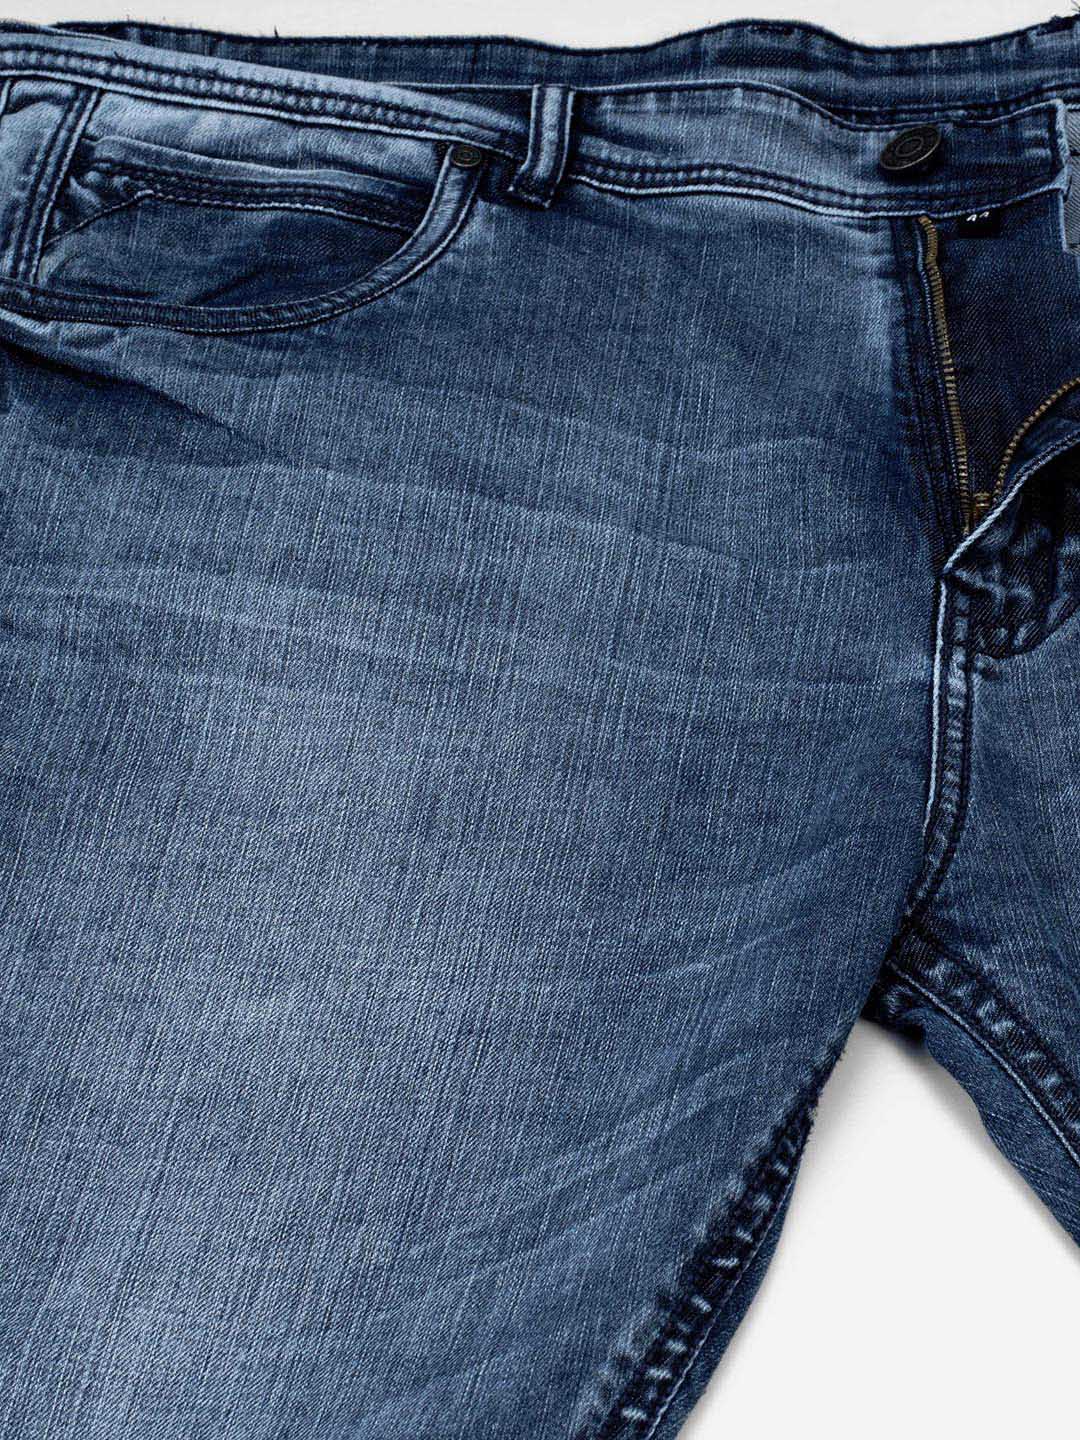 bottomwear/jeans/JPJ12115/jpj12115-2.jpg